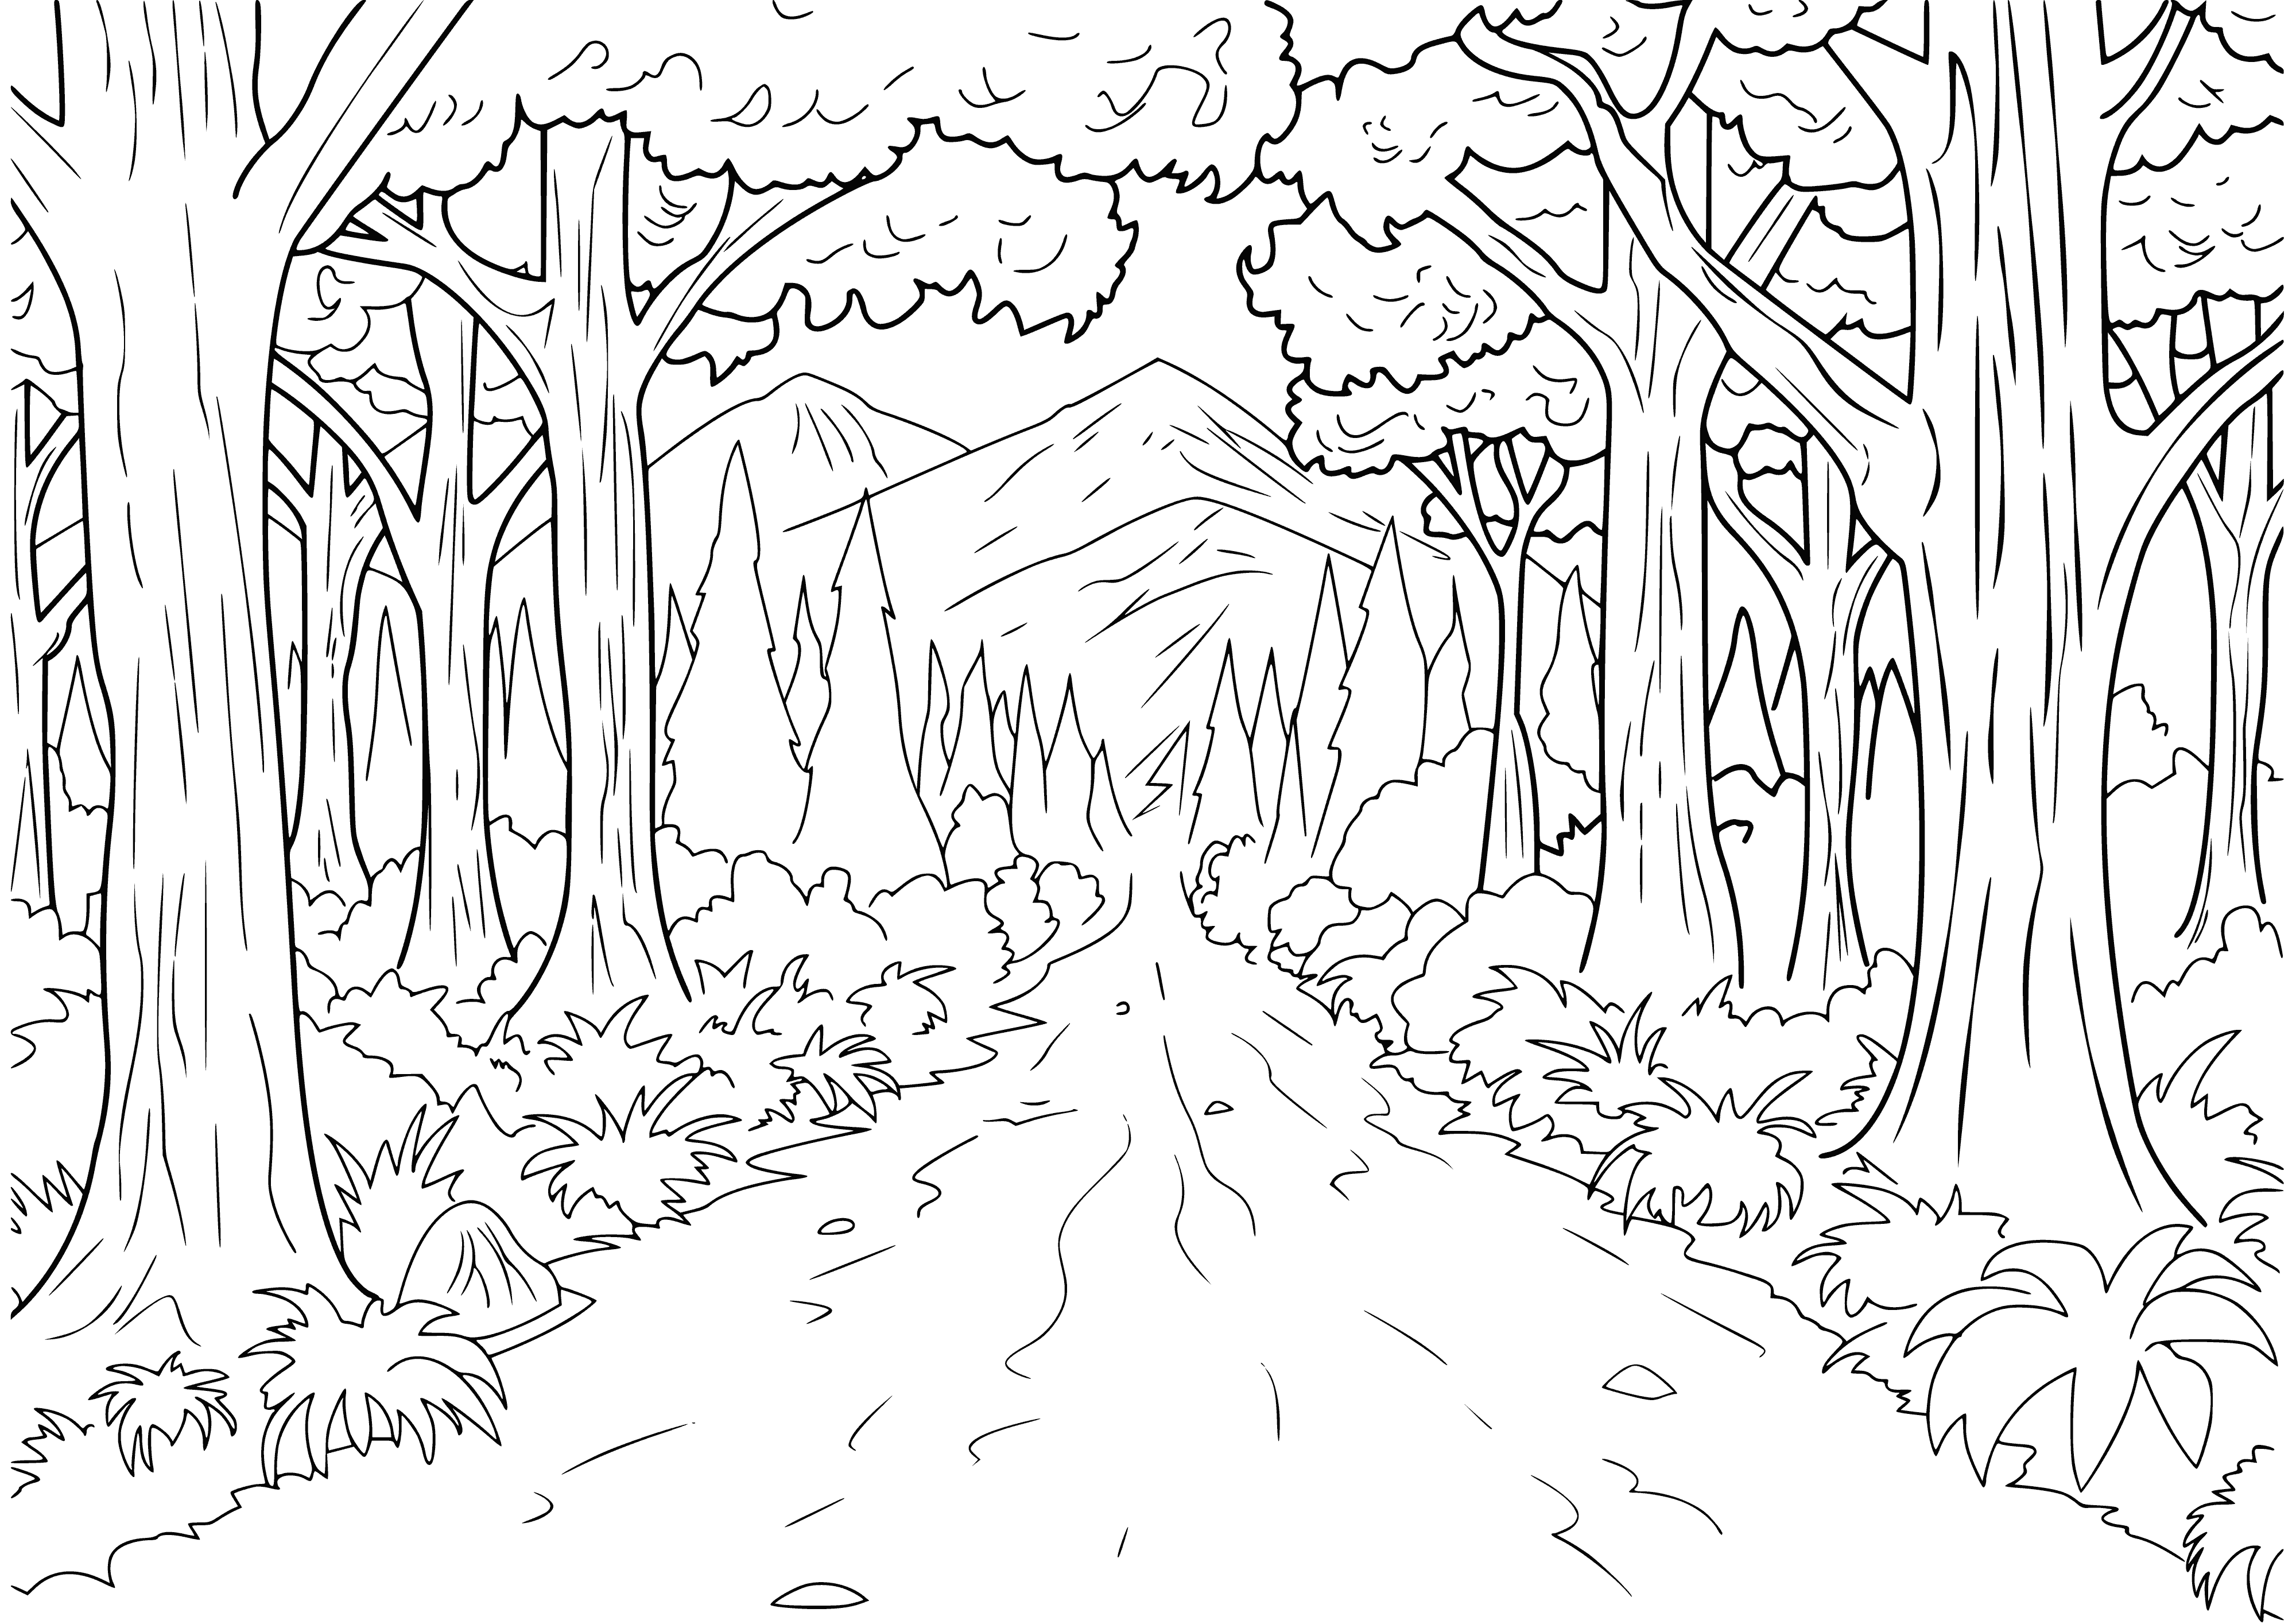 Route forestière coloriage